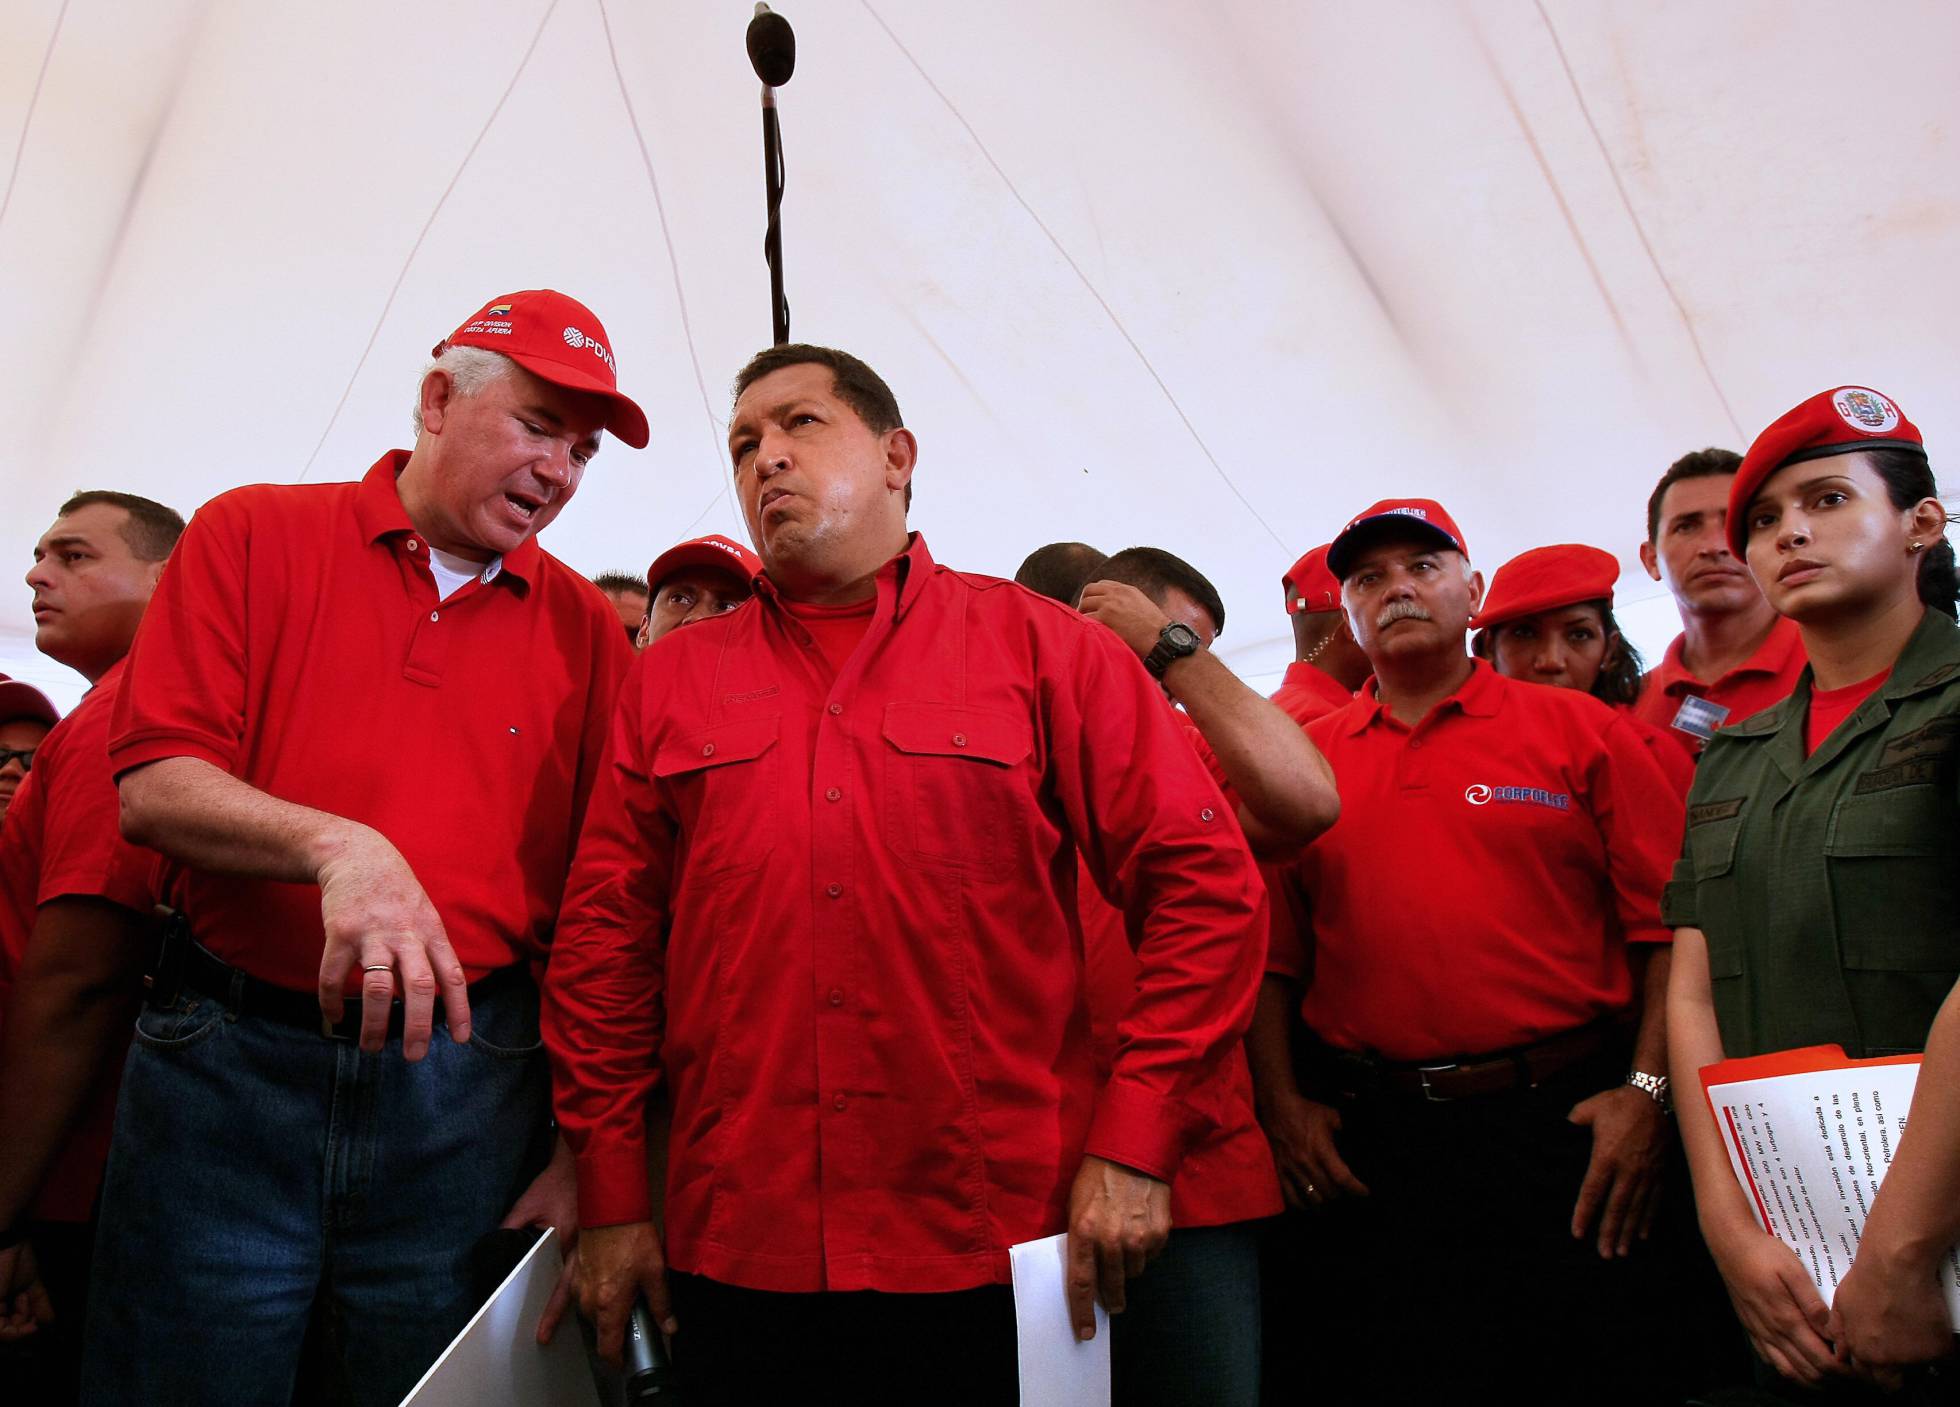 El País: Una firma española pagó 2,7 millones de euros a la red de sobornos de exministros de Chávez